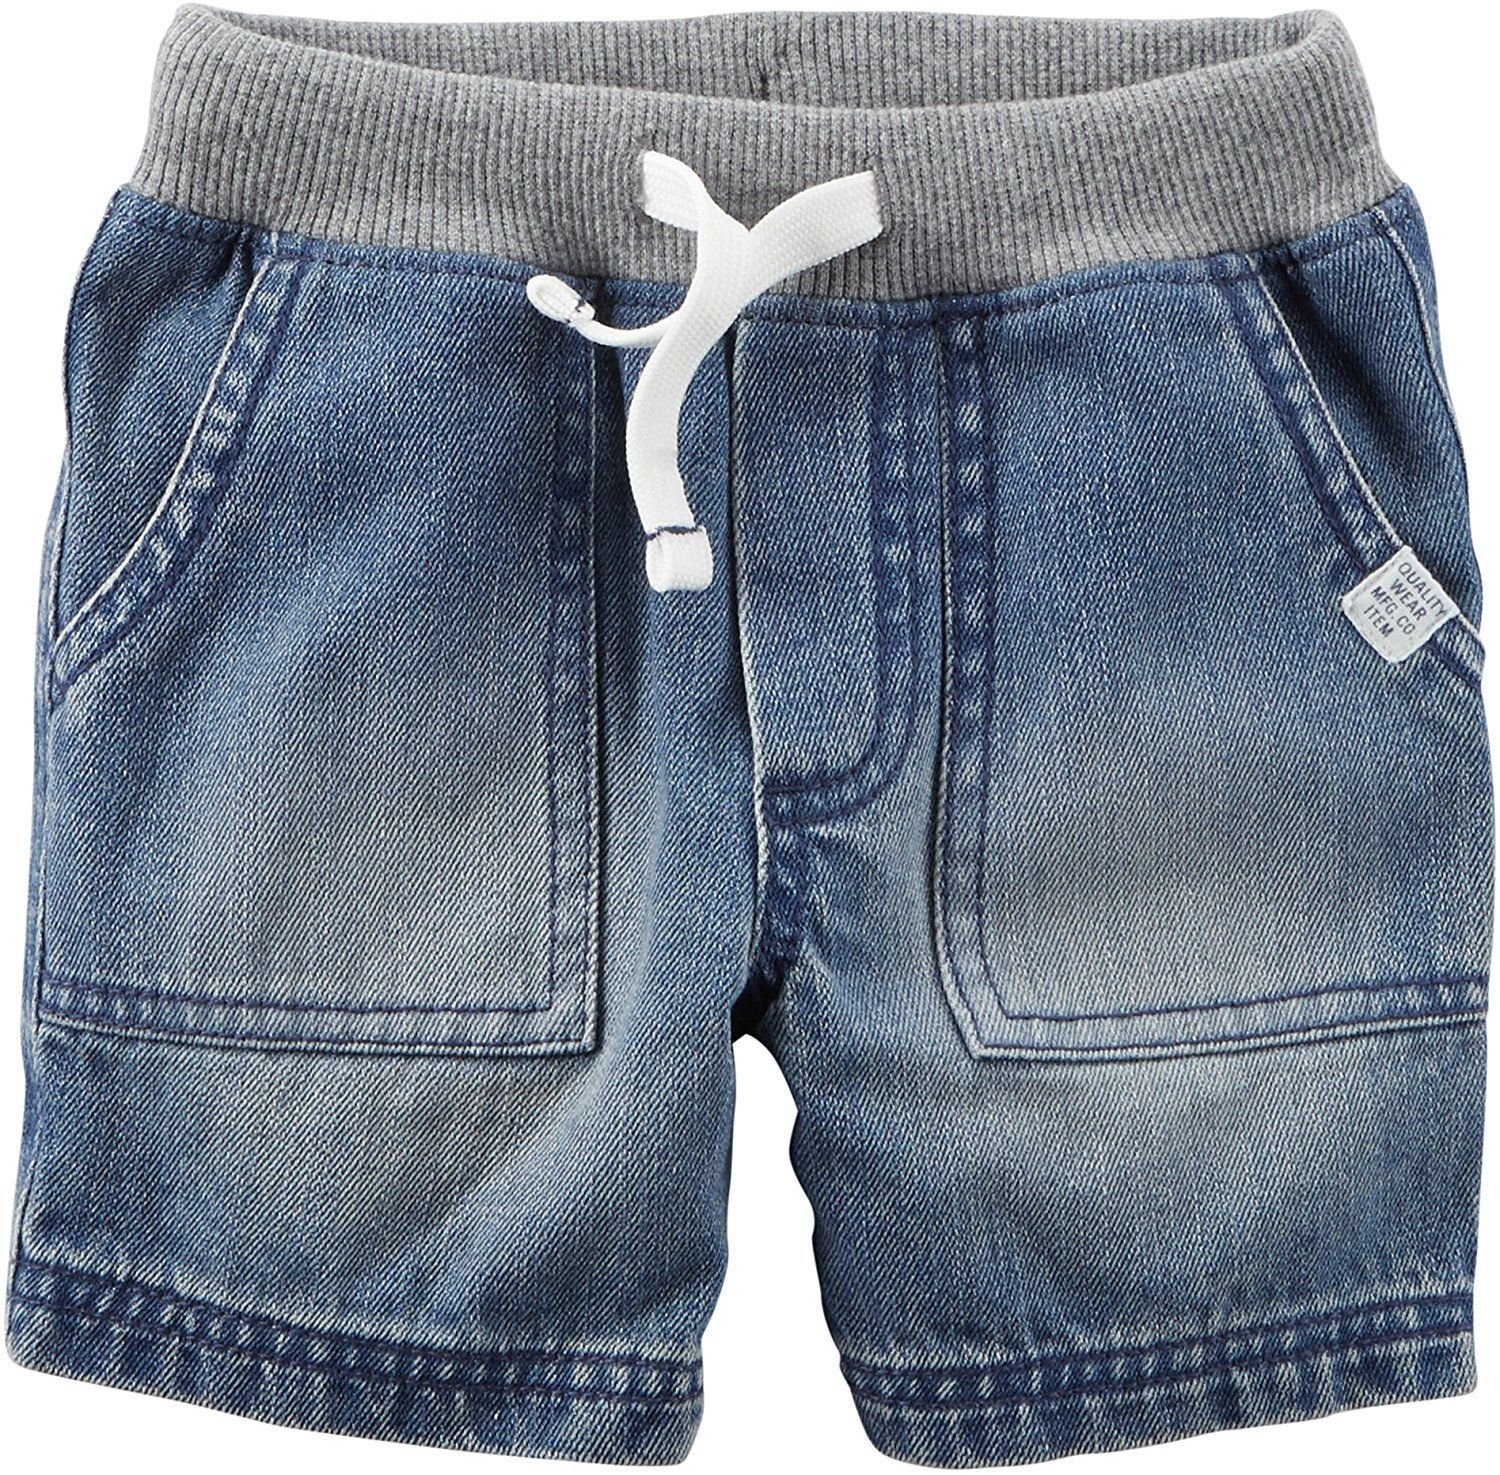 Джинсовые шорты для мальчика. Модные шорты для мальчиков. Джинсовые шорты детские. Детские шорты для мальчиков. Мальчик в джинсовых шортах.